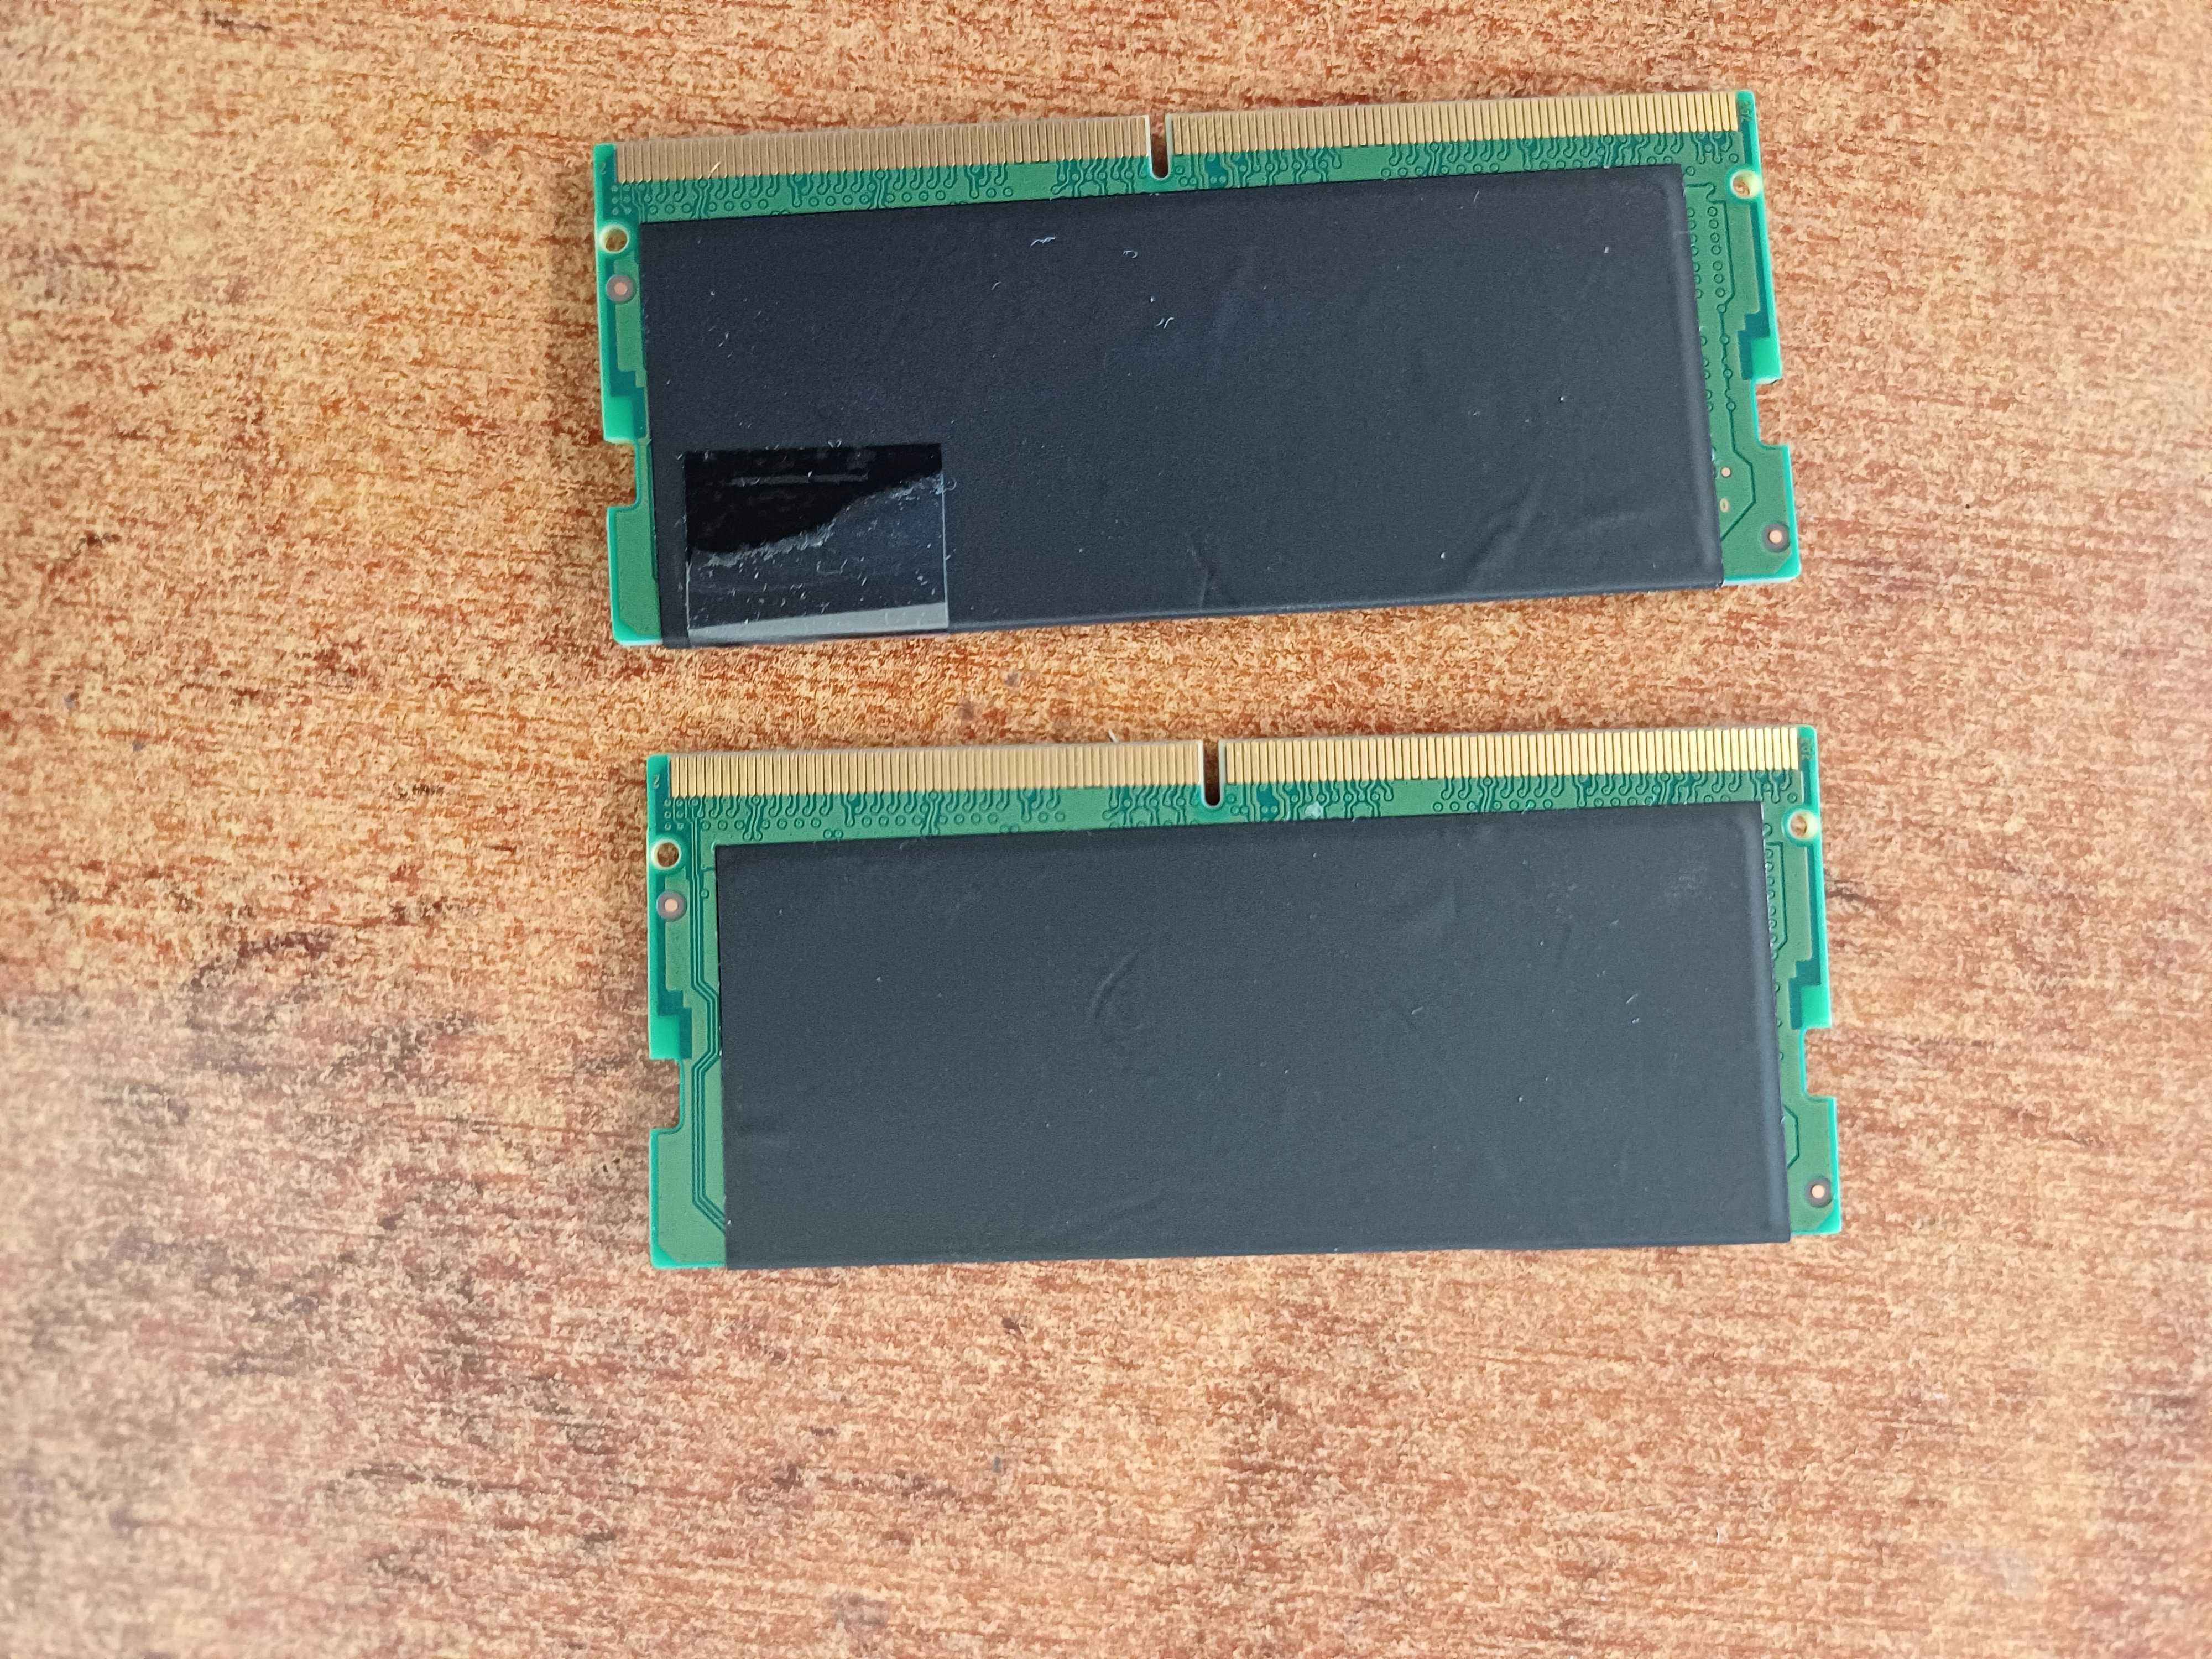 2 x 16GB DDR5 SDRAM dual